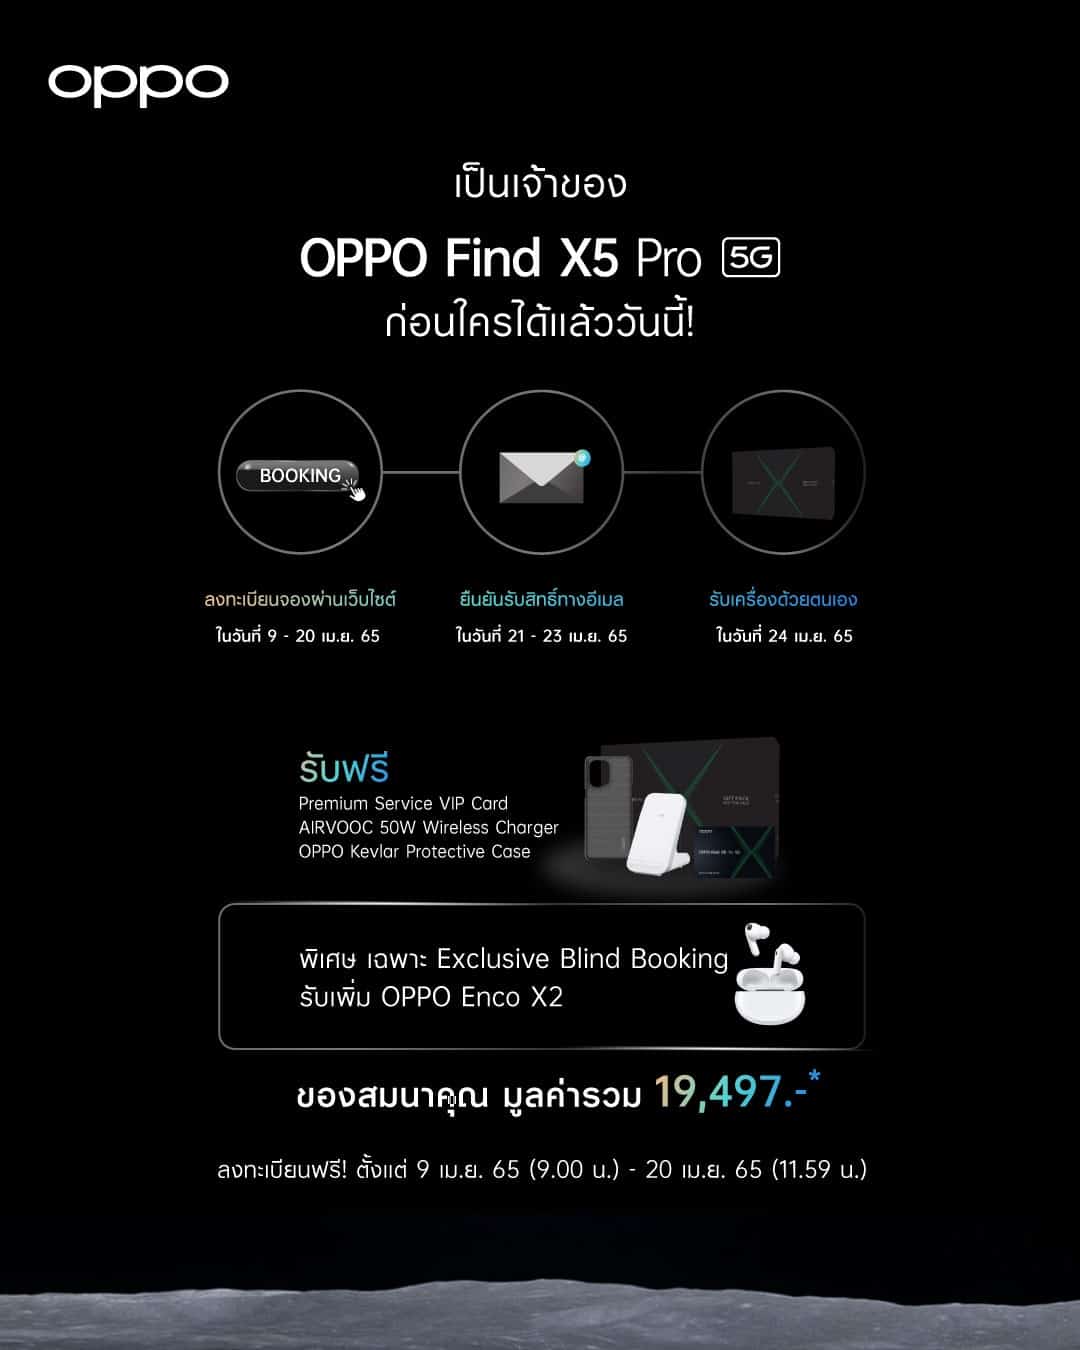 ออปโป้ เปิดจอง OPPO Find X5 Pro 5G ใน Exclusive Blind Booking ถึง 20 เมษายนนี้เท่านั้น! 3